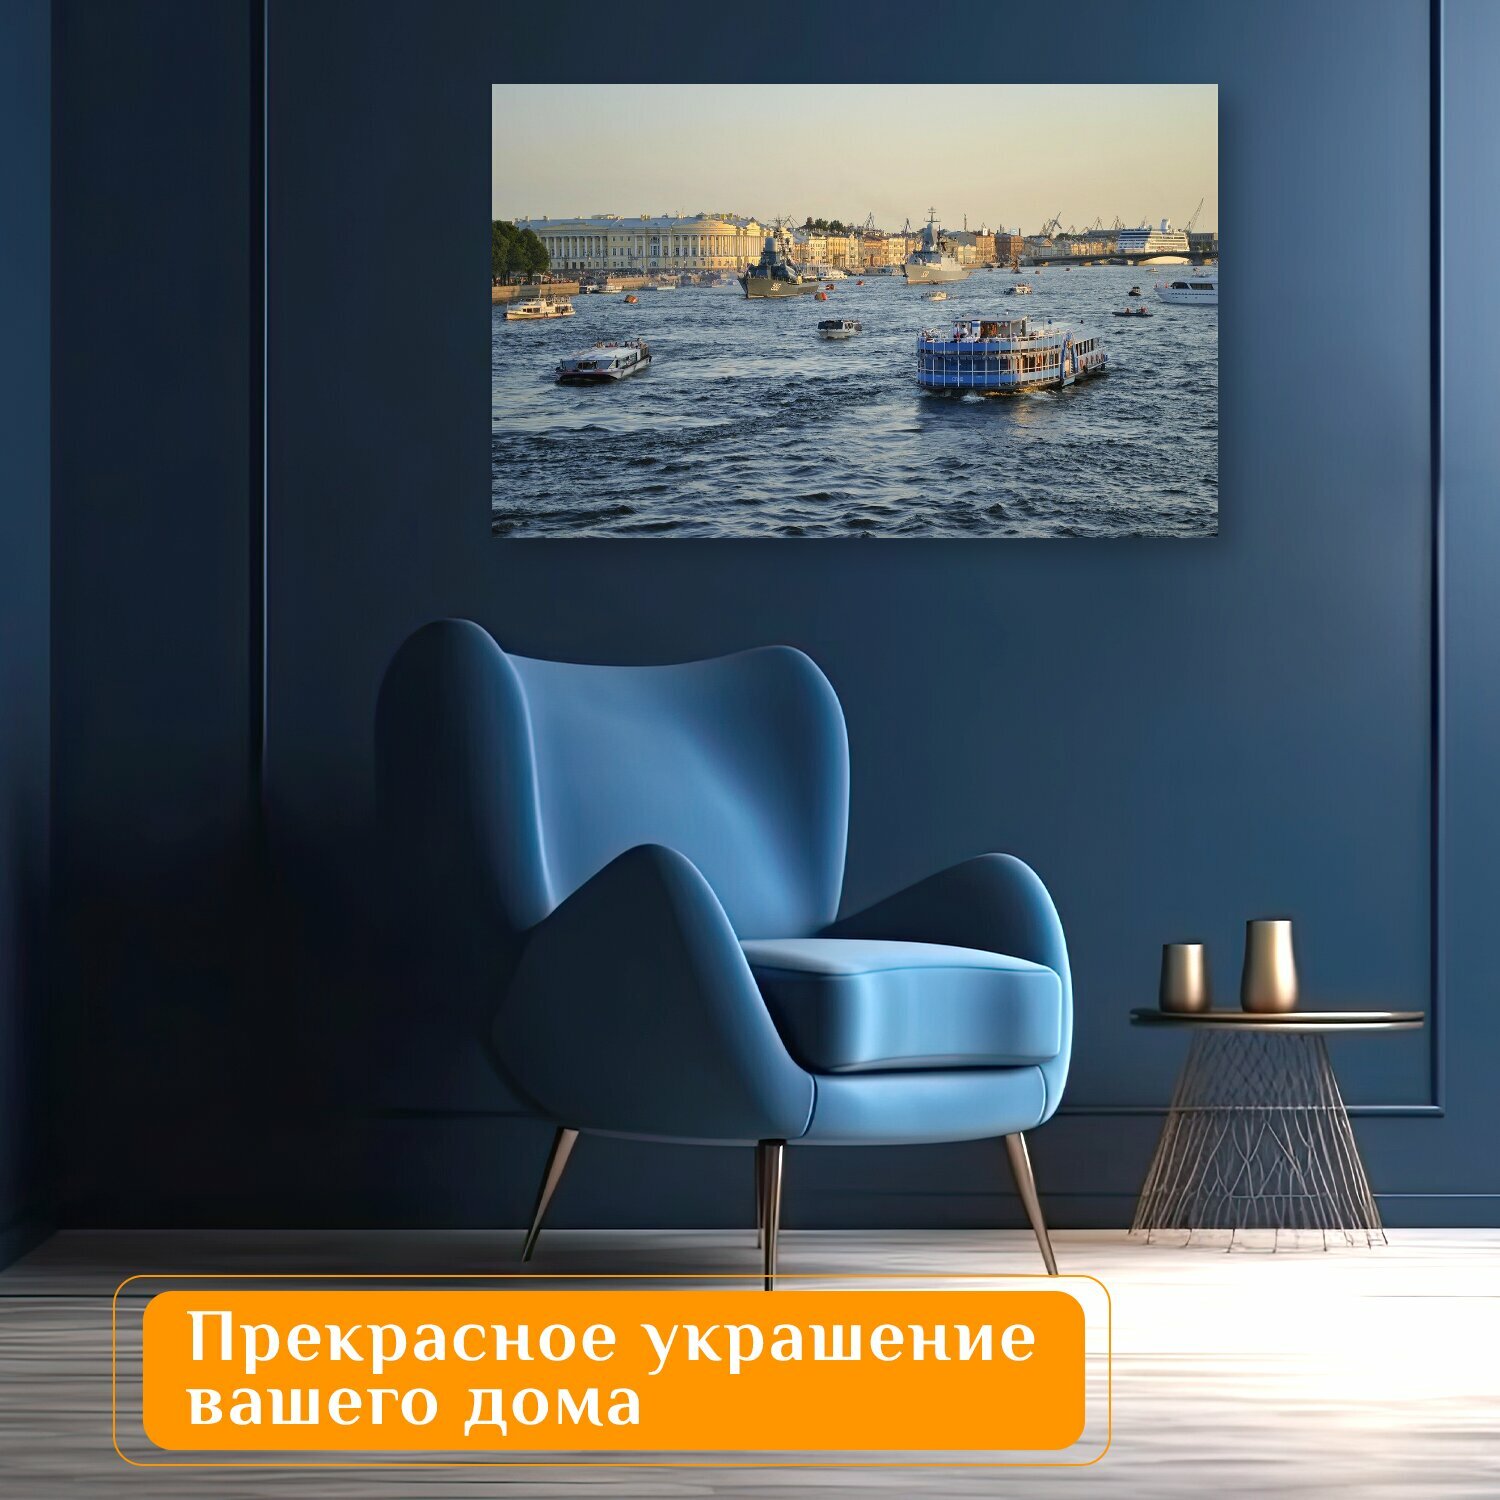 Картина на холсте "Санкт петербург, россия, невы" на подрамнике 120х75 см. для интерьера